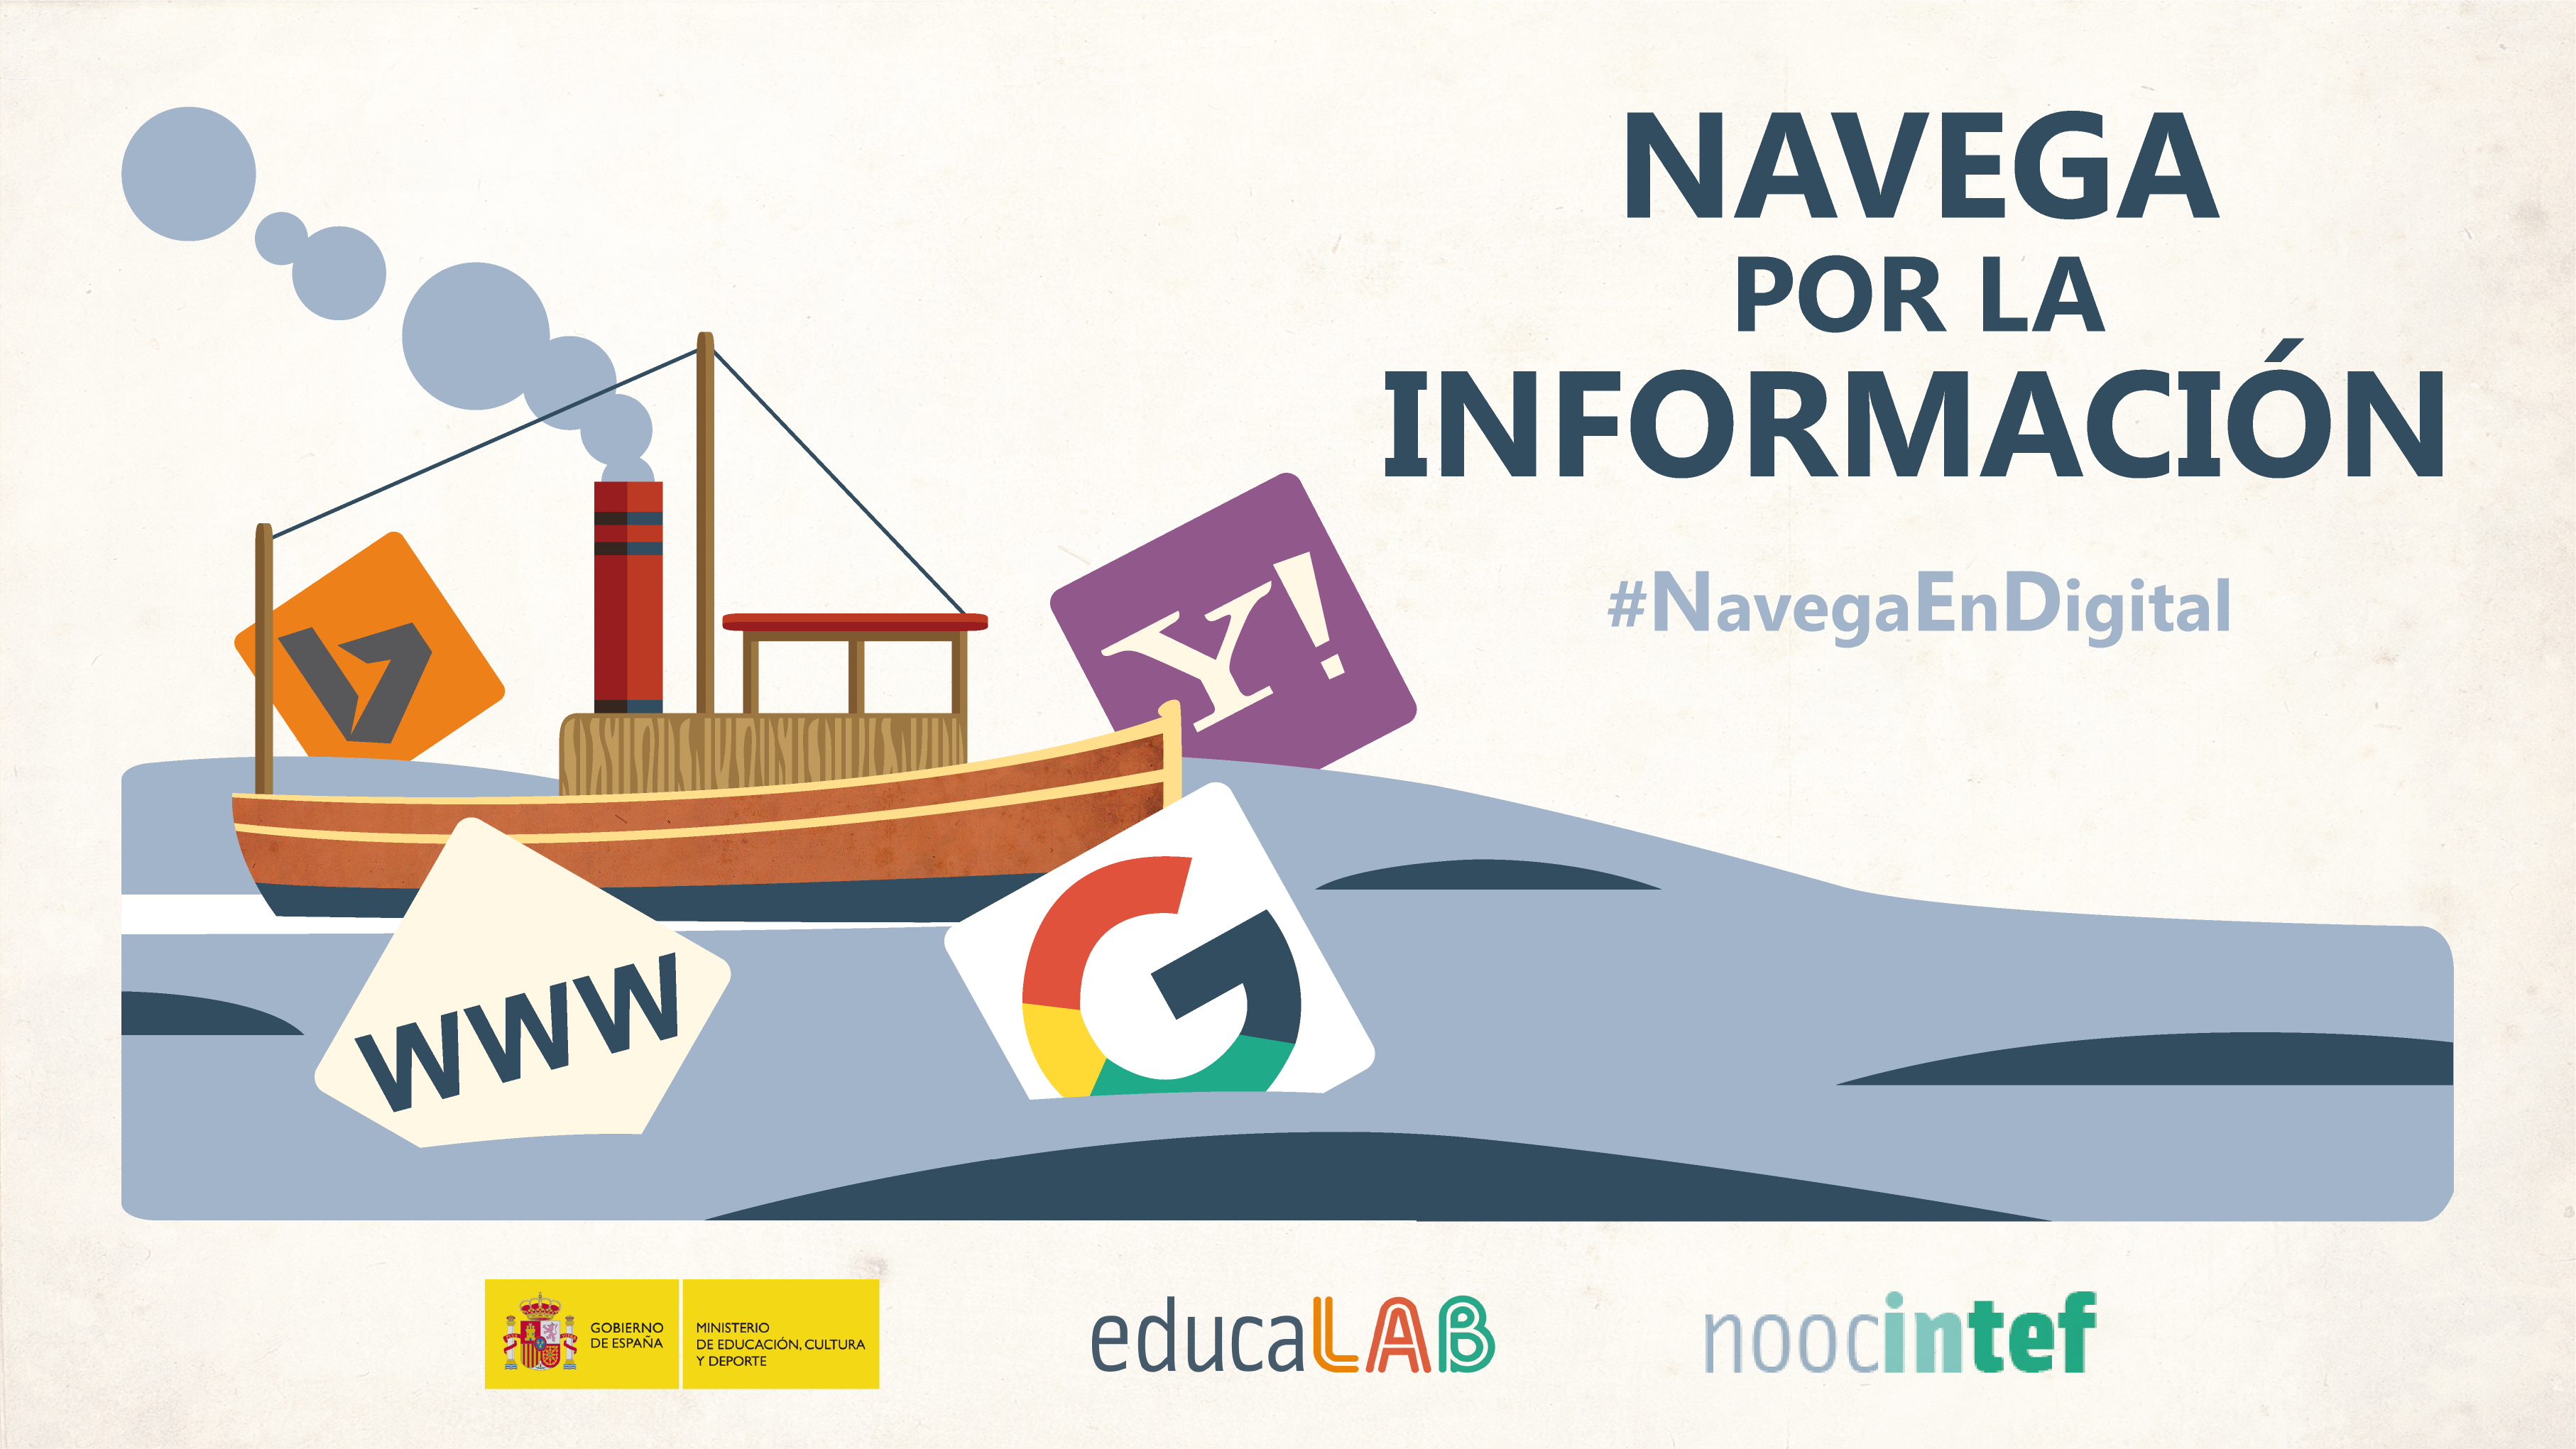 NOOC del INTEF: "Navega por la información"